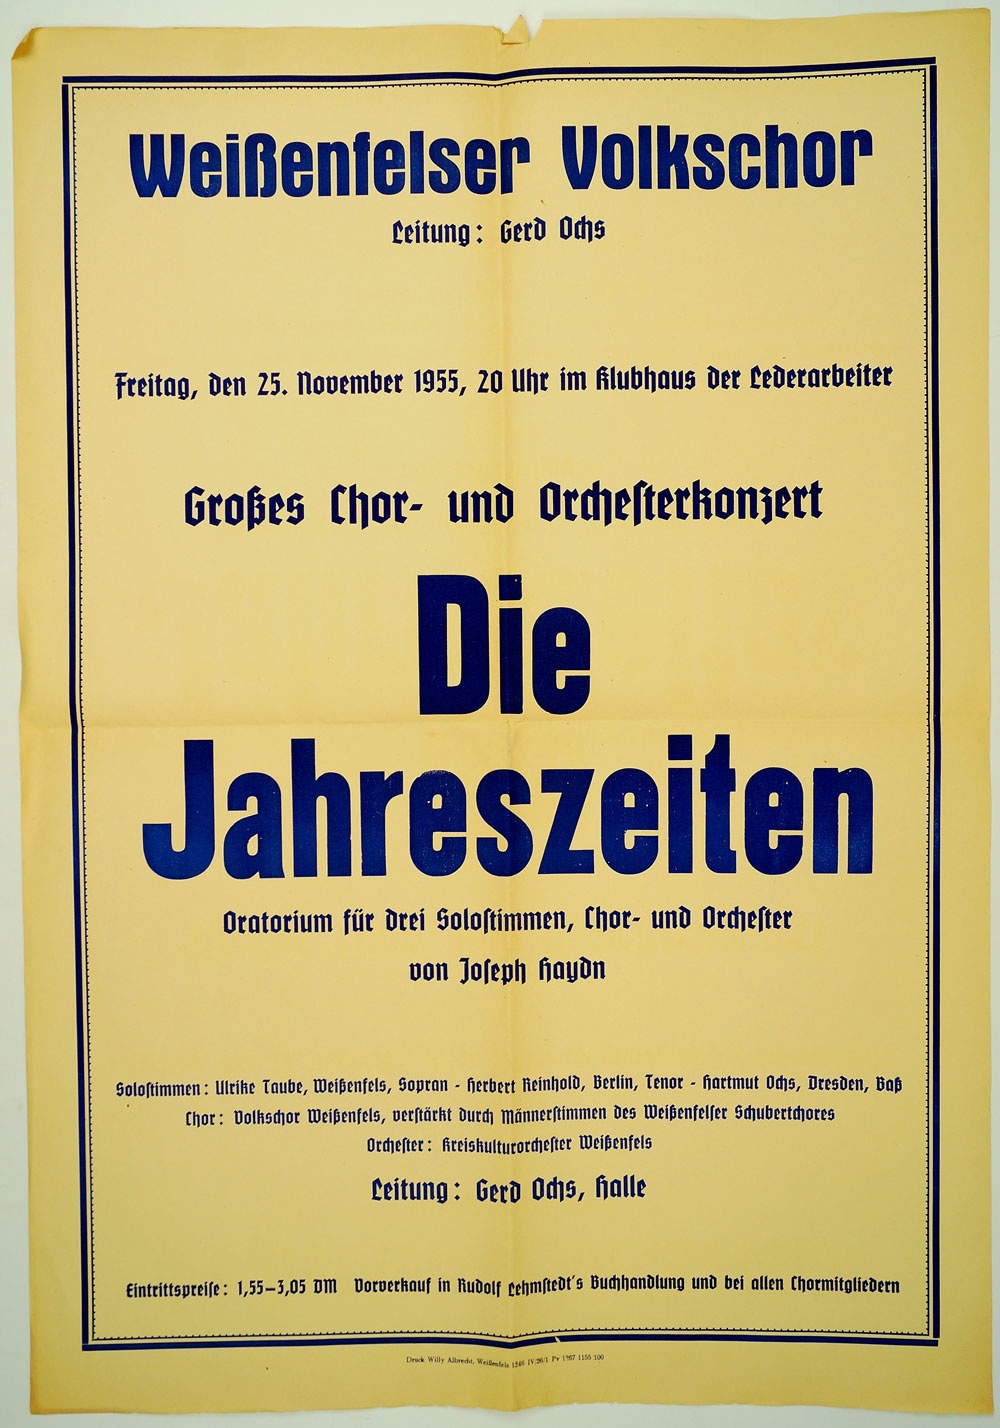 Plakat für ein Chor- und Orchesterkonzert "Die vier Jahrszeiten", 1955 (Museum Weißenfels - Schloss Neu-Augustusburg CC BY-NC-SA)